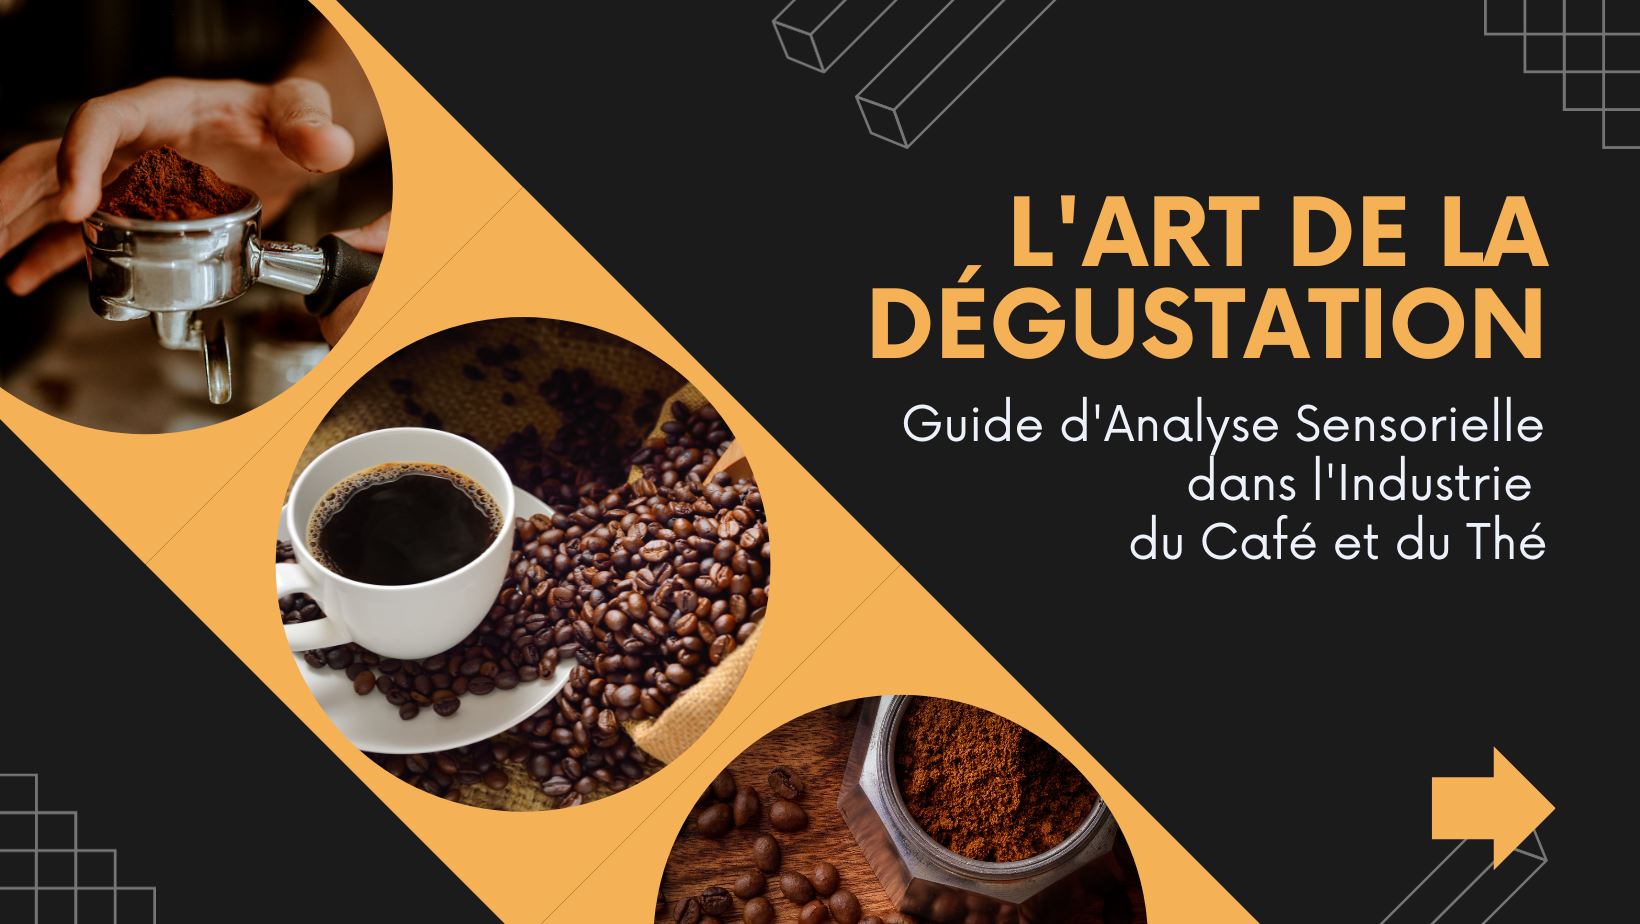 Guide d’Analyse Sensorielle dans l’Industrie du Café et du Thé